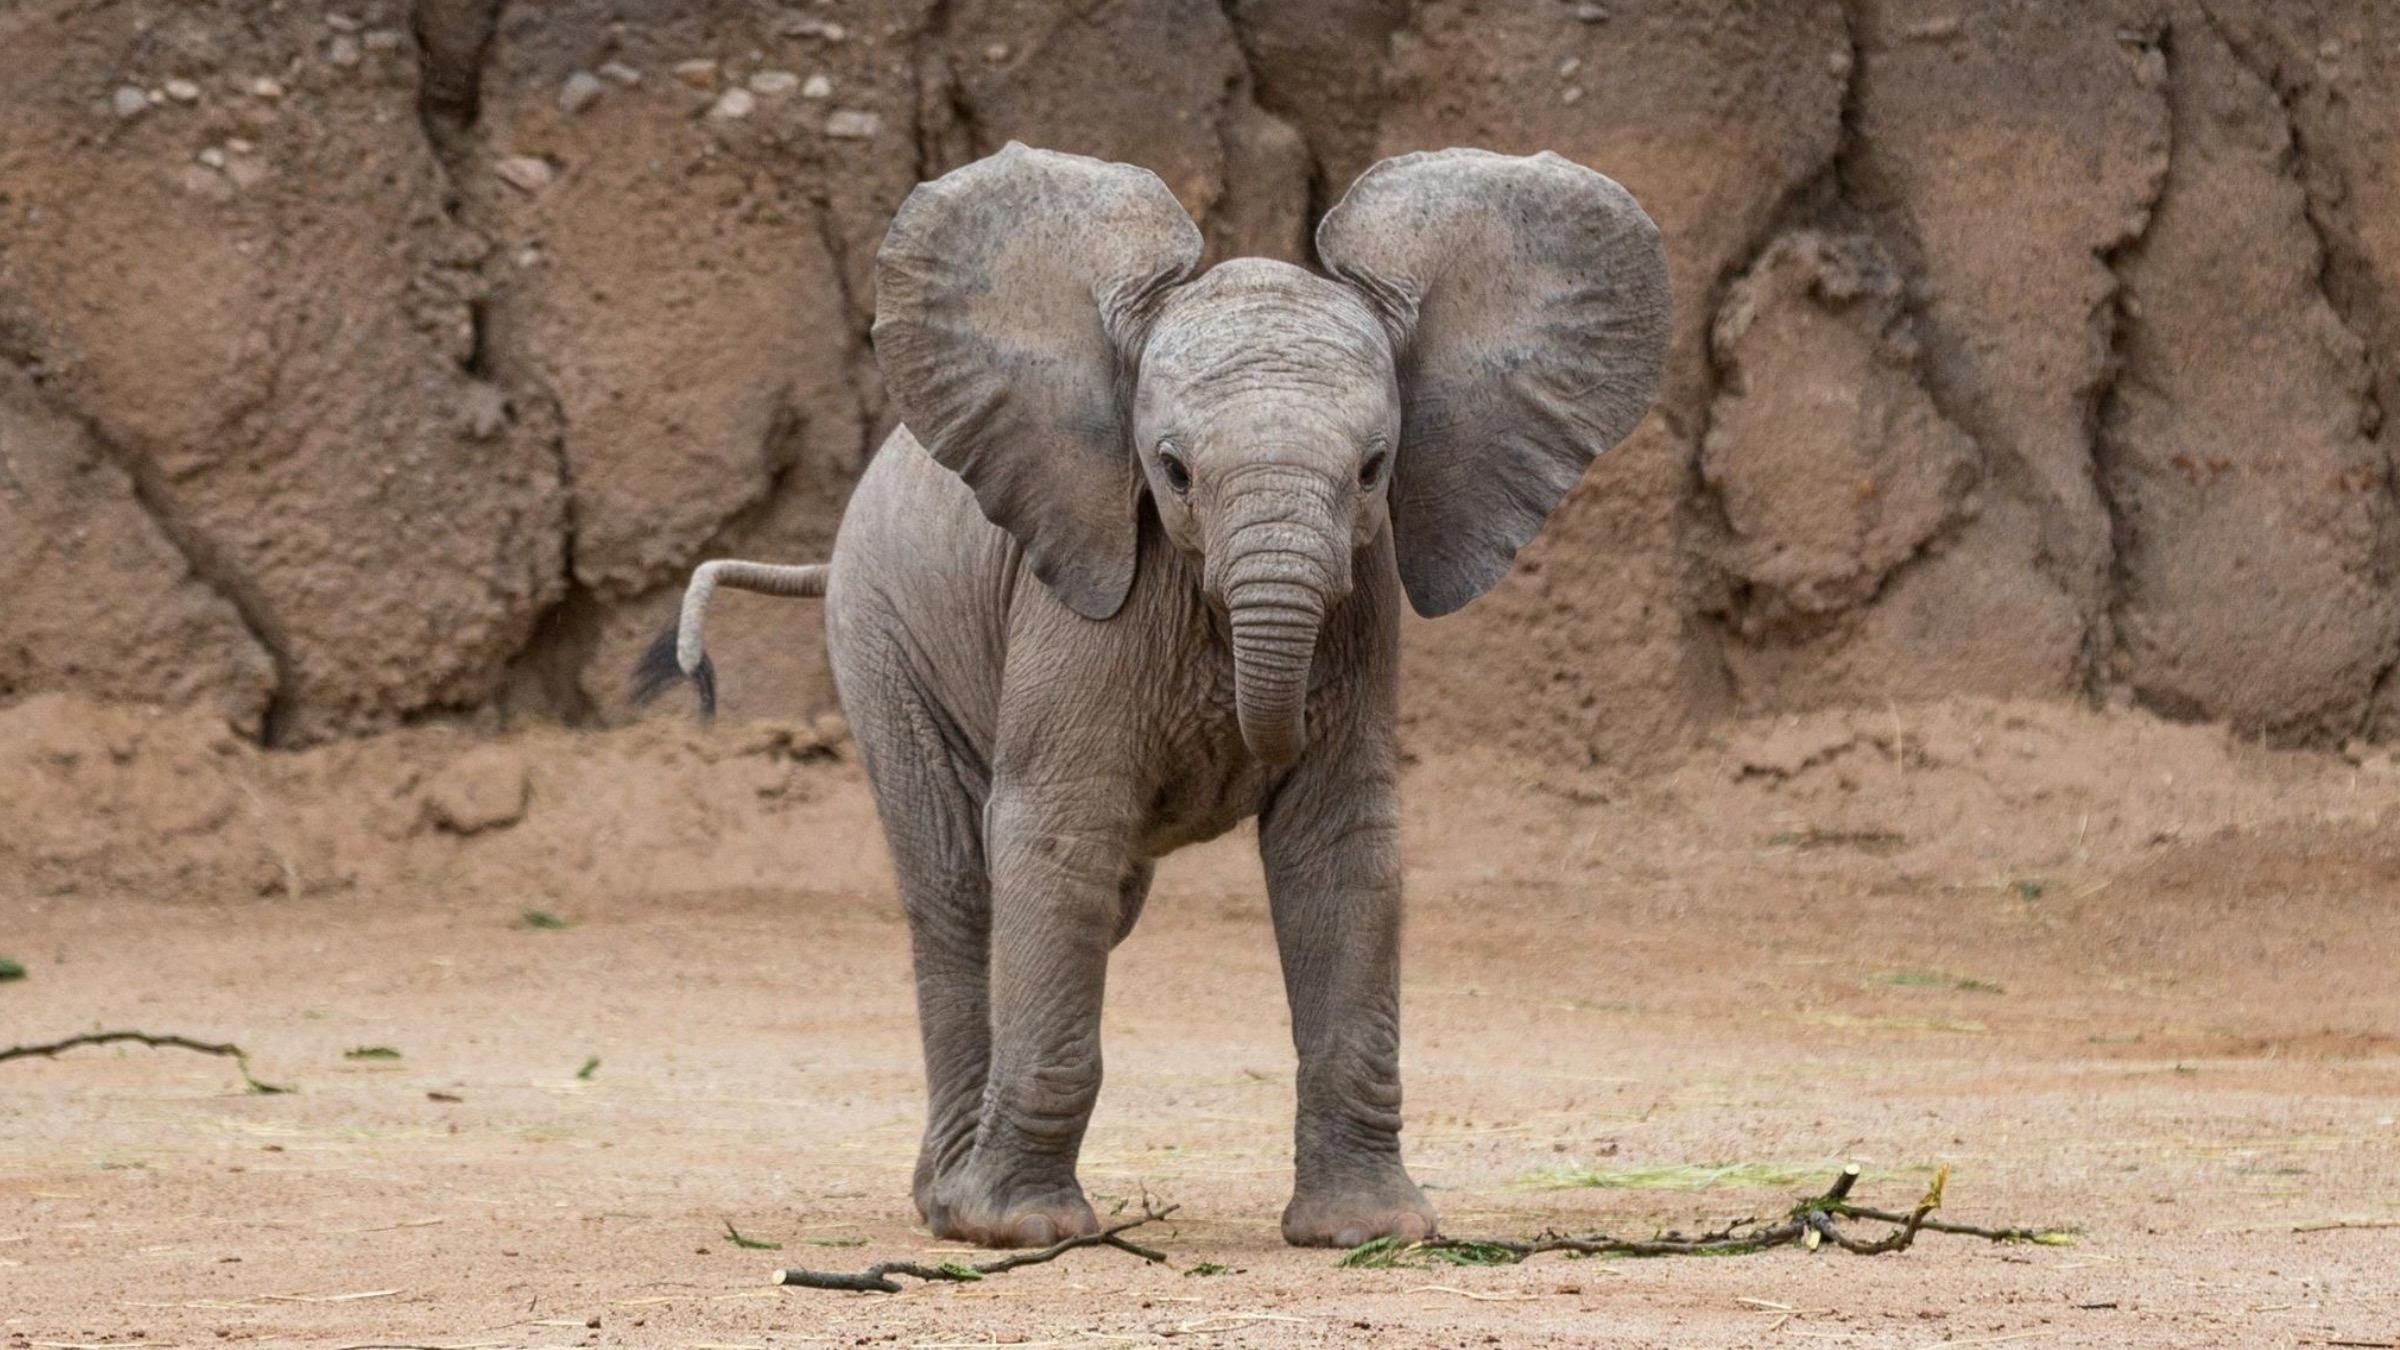 Сміливий малюк: як слоненя змусило автомобіліста відʼїхати - Pets